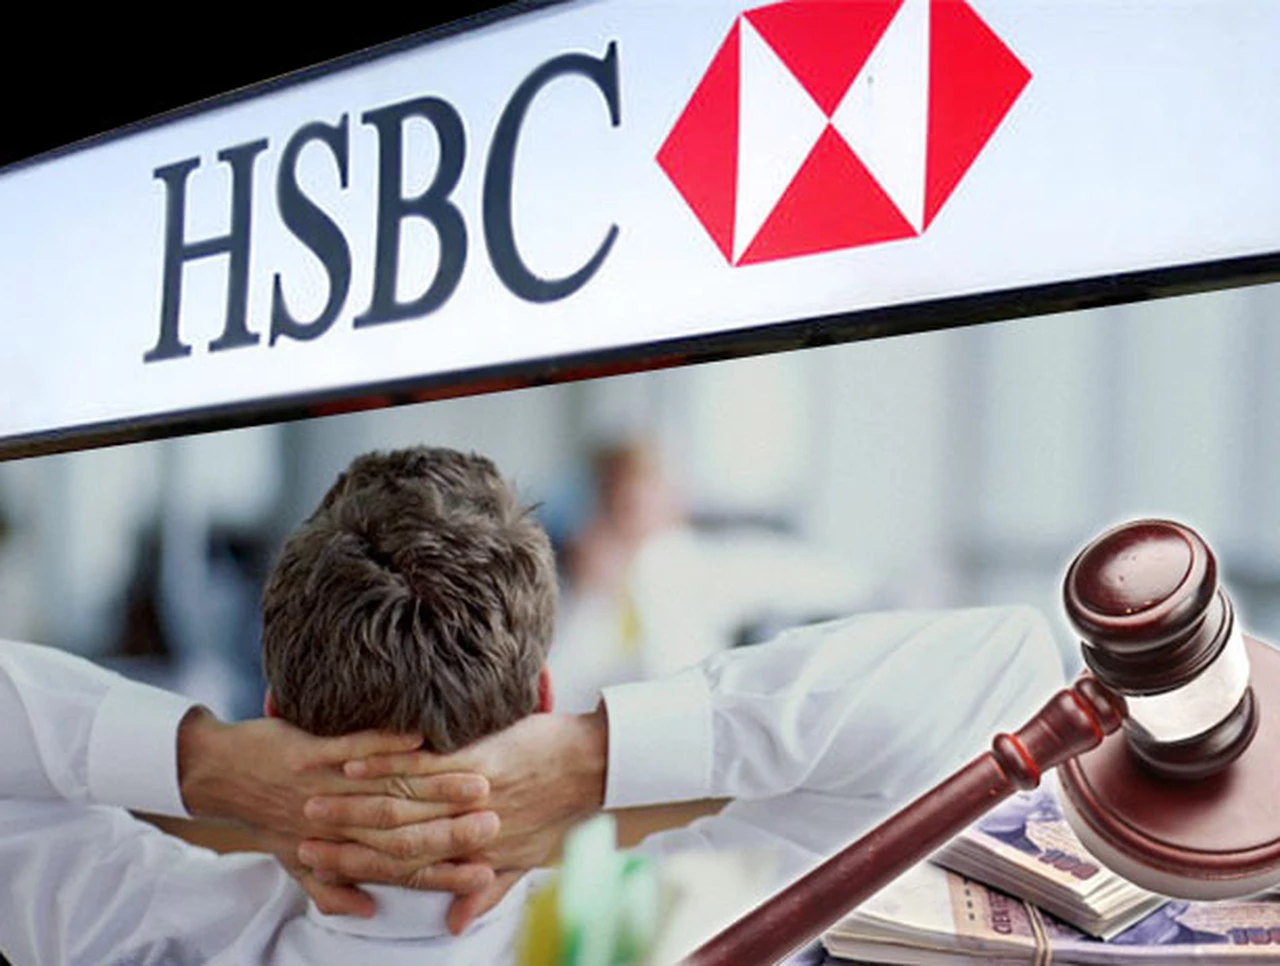 La AFIP investiga al banco HSBC por evasión fiscal y lavado de dinero